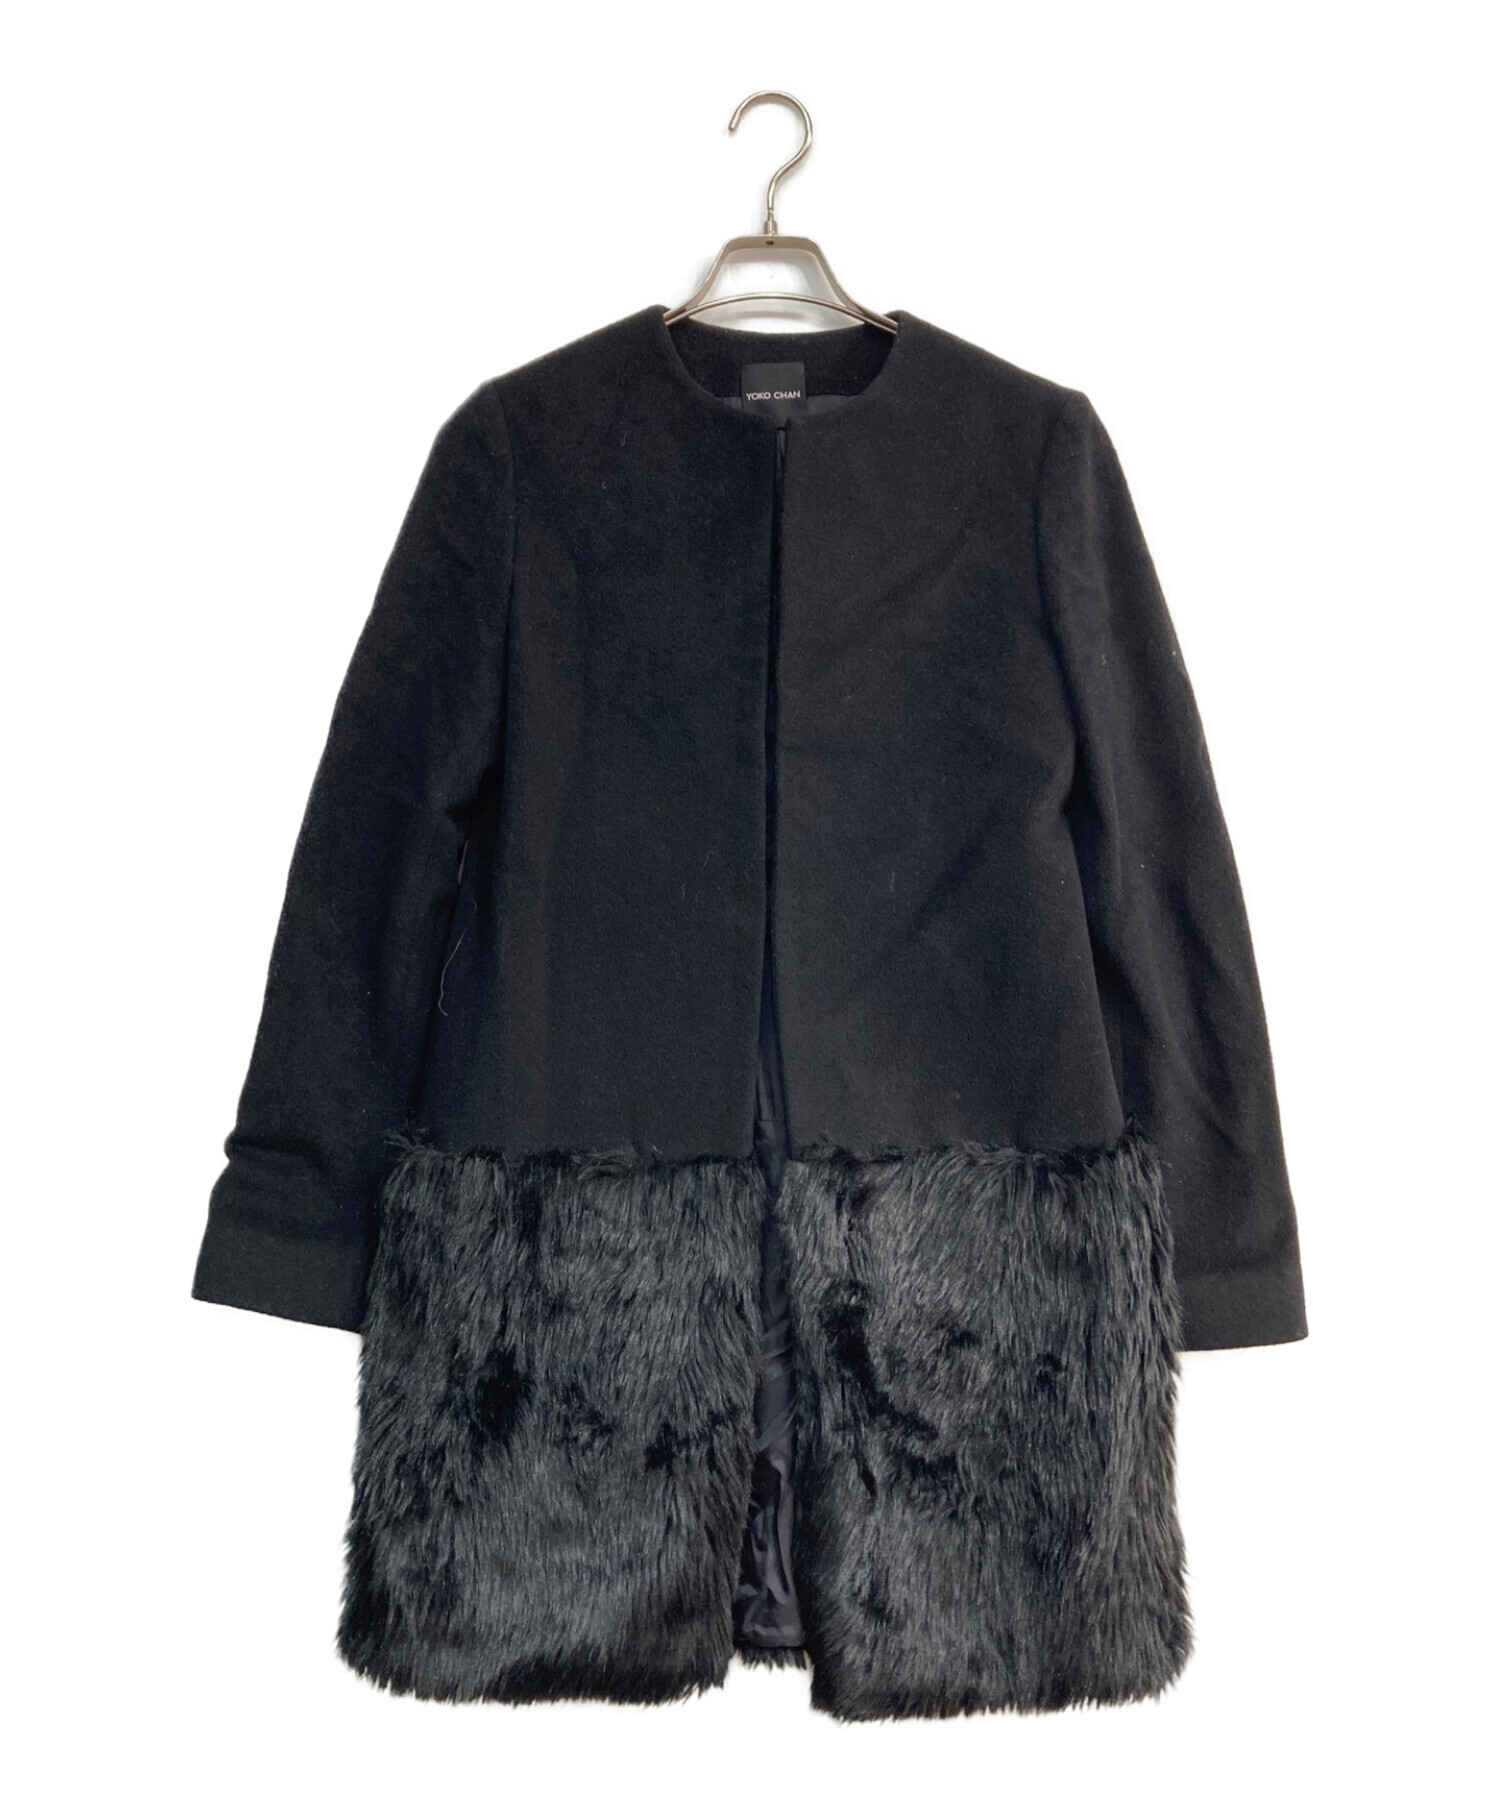 YOKO CHAN (ヨーコチャン) ノーカラーファー切替コート　YCC-415-048　ブラック ブラック サイズ:40着丈はどれくらいでしょうか